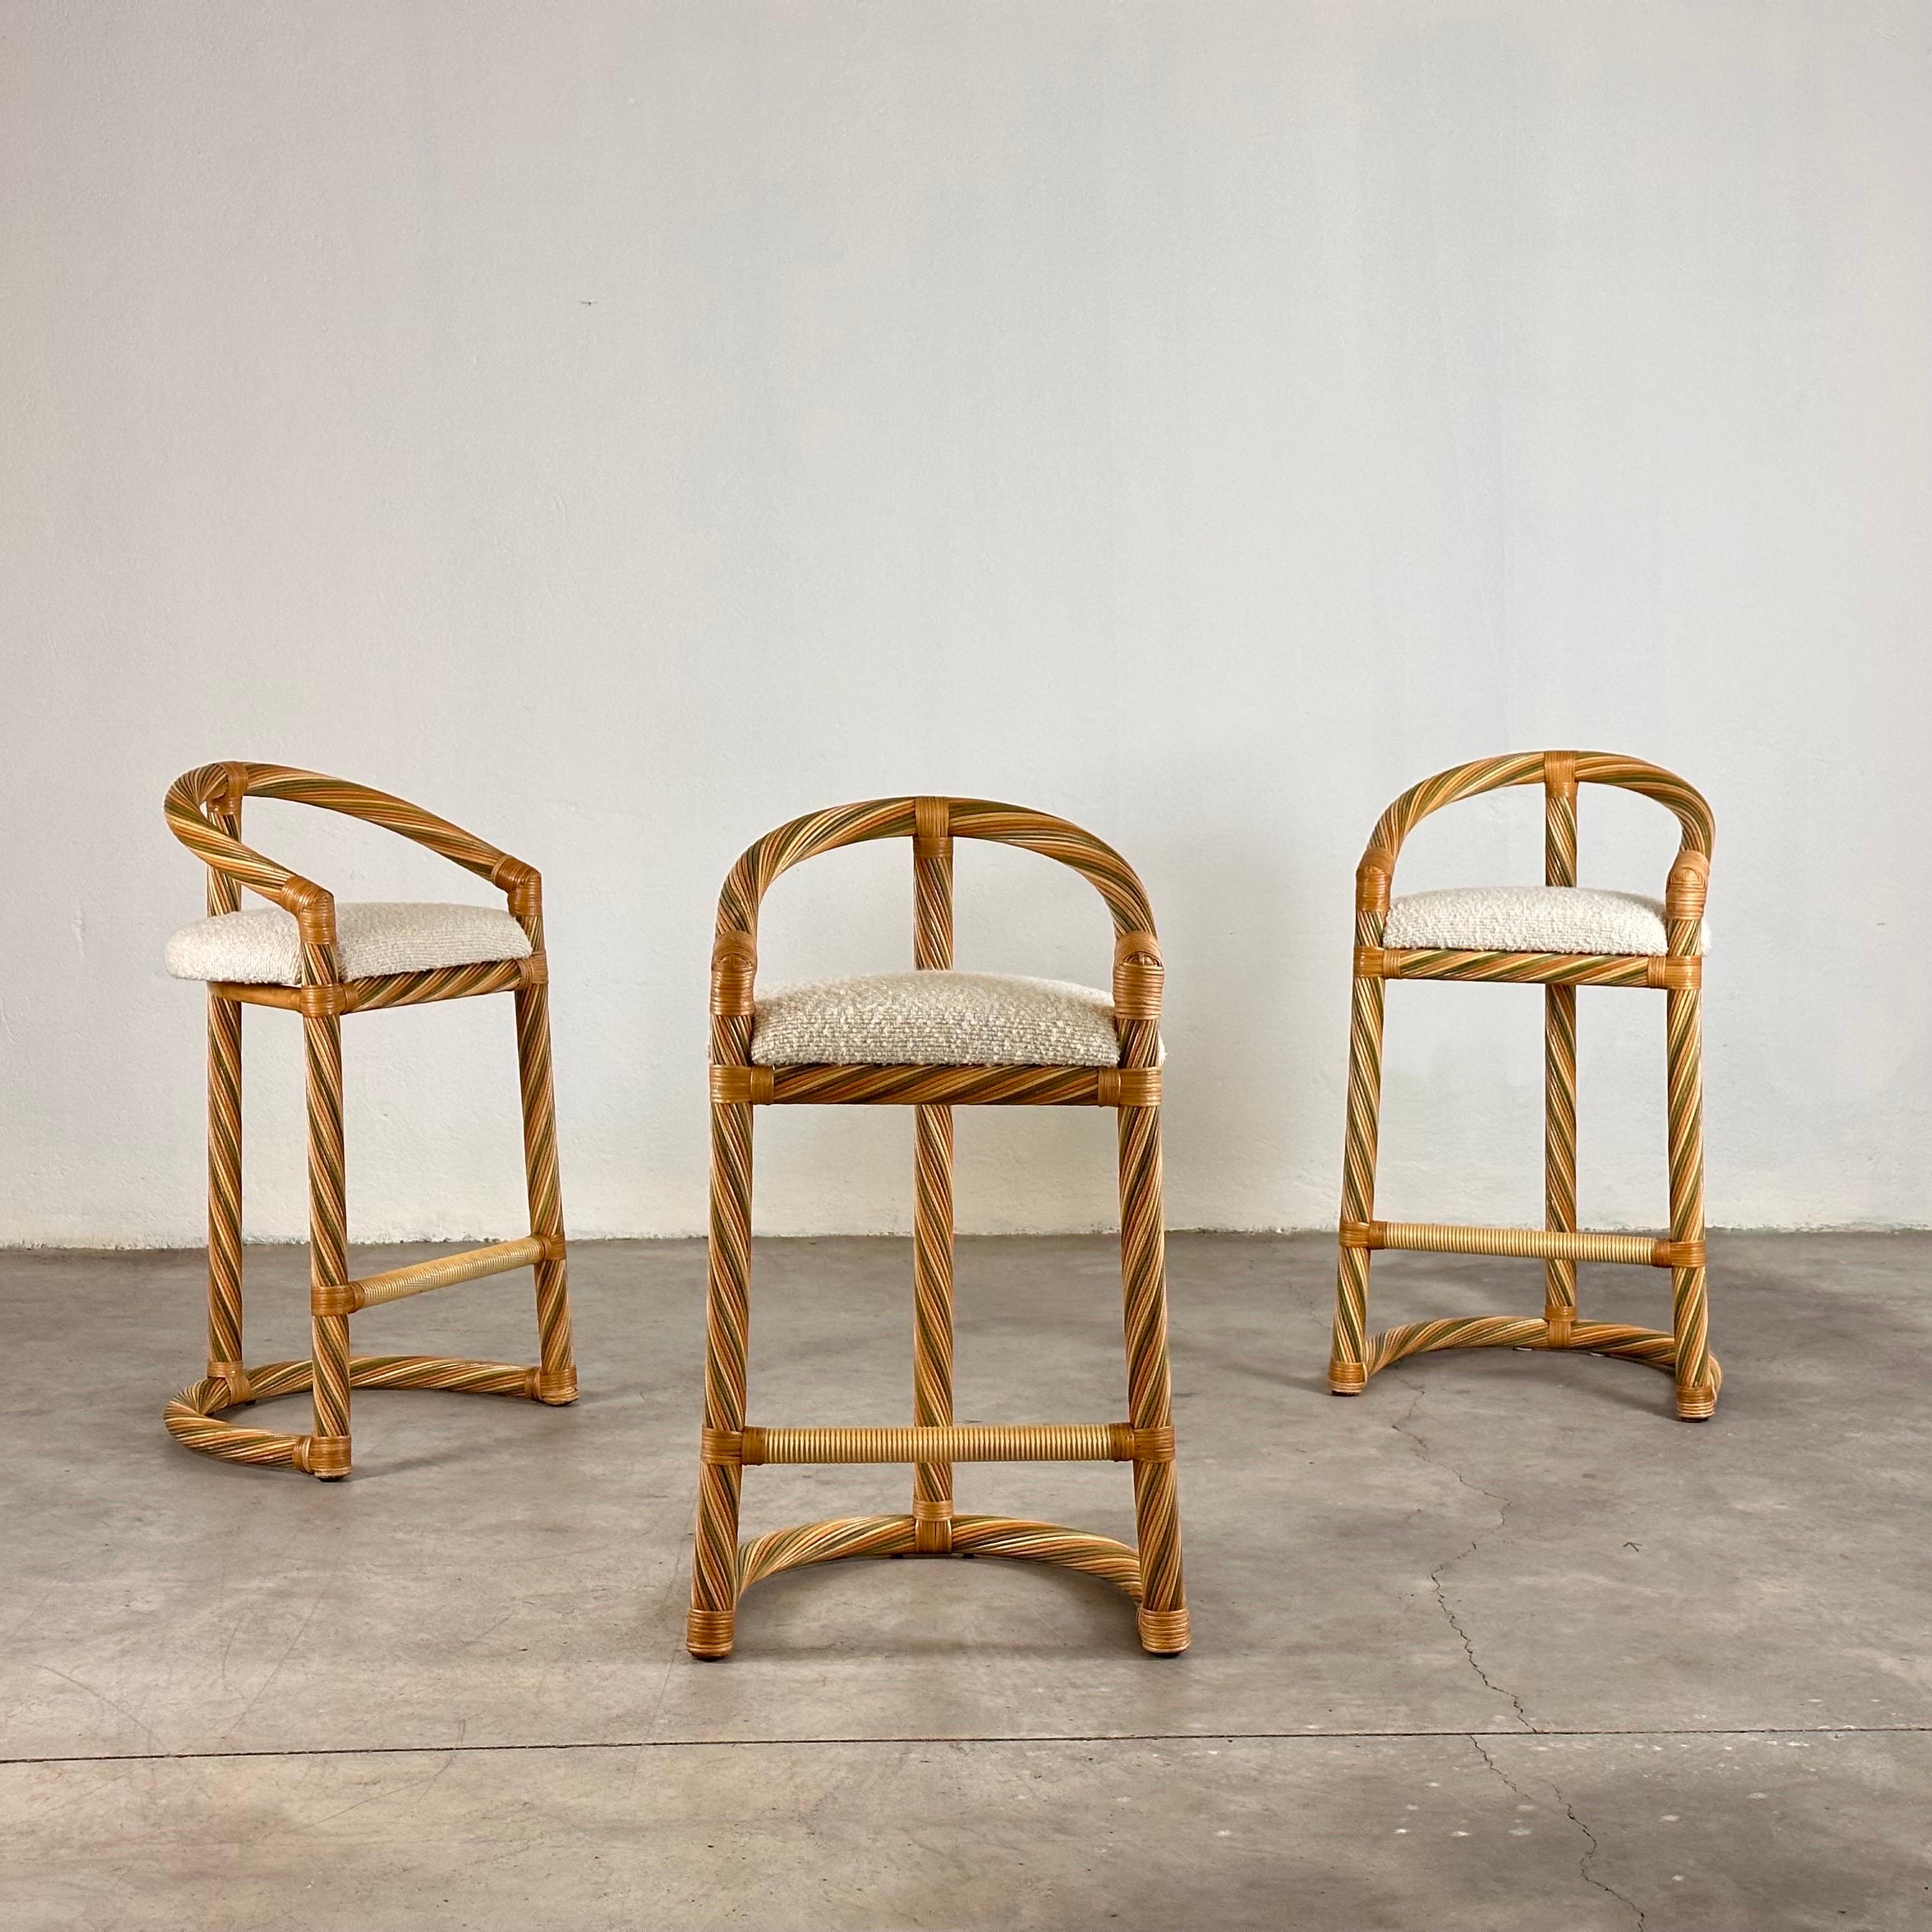 Alberto Smania, designer italien connu pour son approche innovante de la conception de meubles, a fondé le Studio Interni Smania avec la vision de créer des pièces intemporelles qui allient style et fonctionnalité.

Fabriqués en osier durable, ces